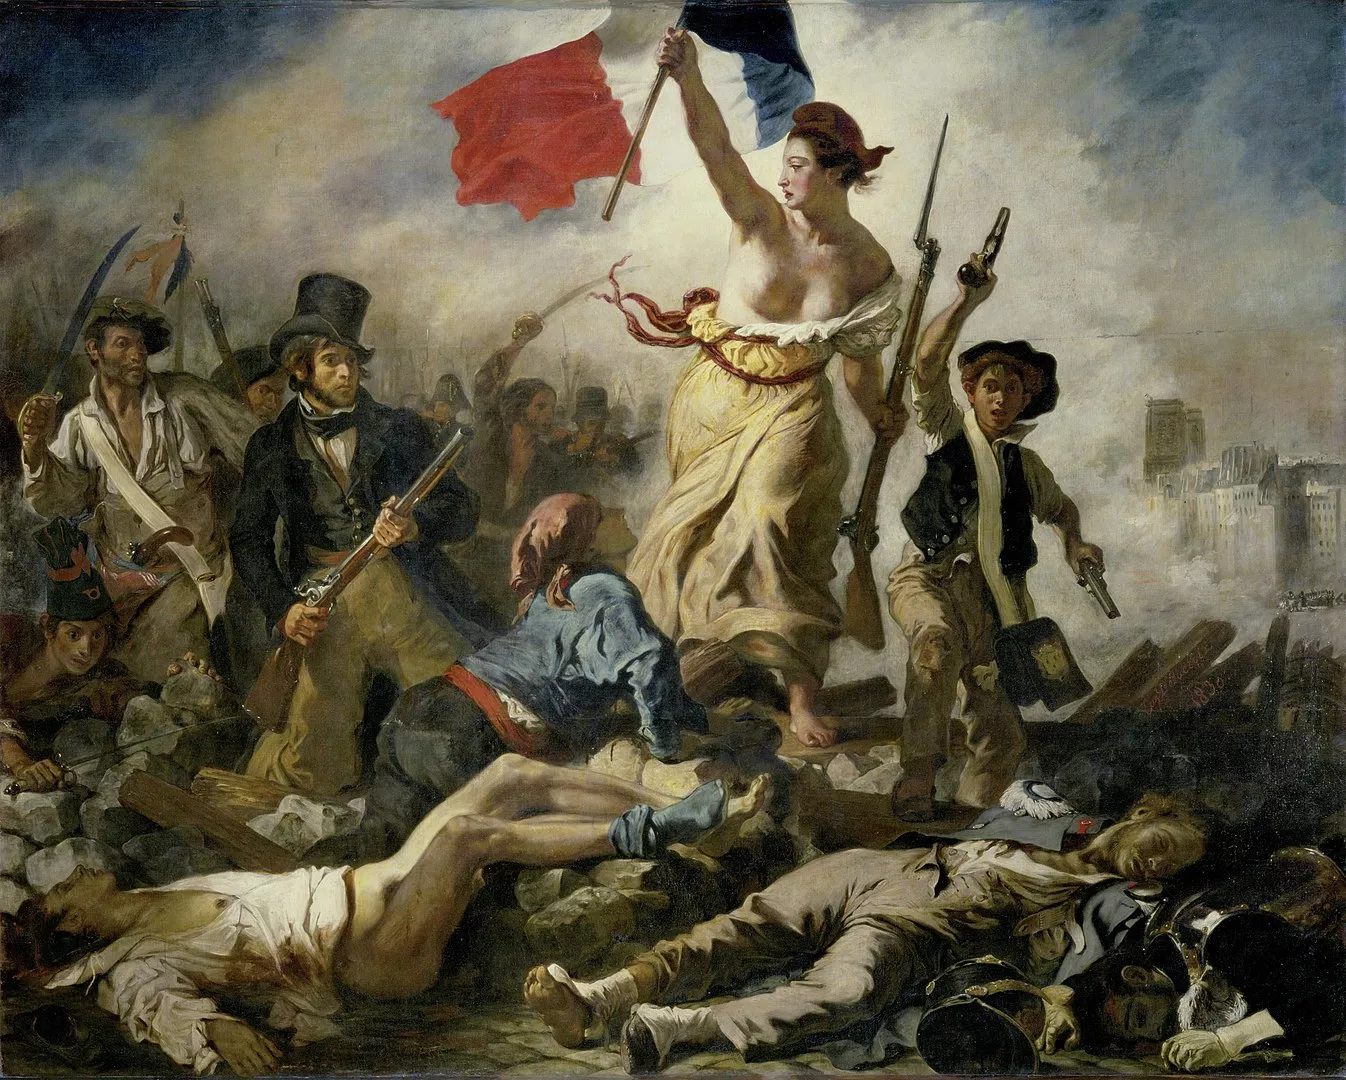 Aquest oli sobre llenç de Delacroix representa un alçament a París en el qual ciutadans de totes les classes socials són guiats per la figura al·legòrica de la llibertat